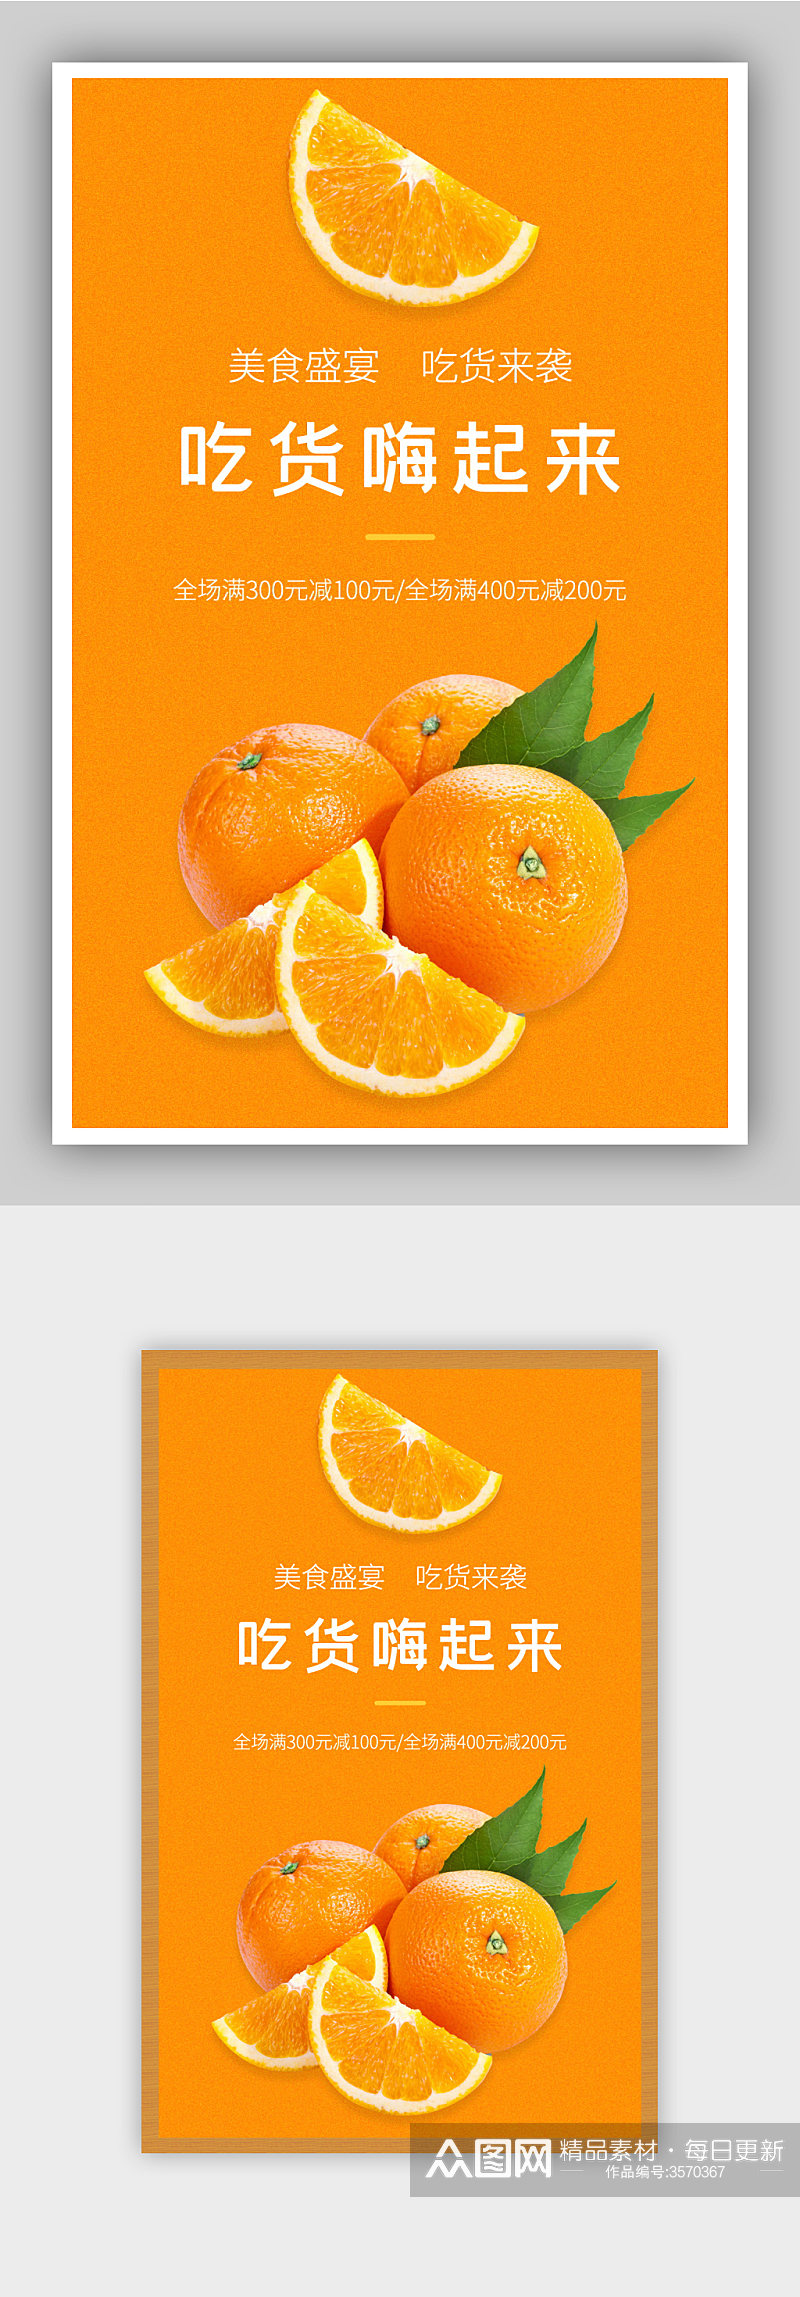 蜜橘橘子砂糖橙促销海报素材